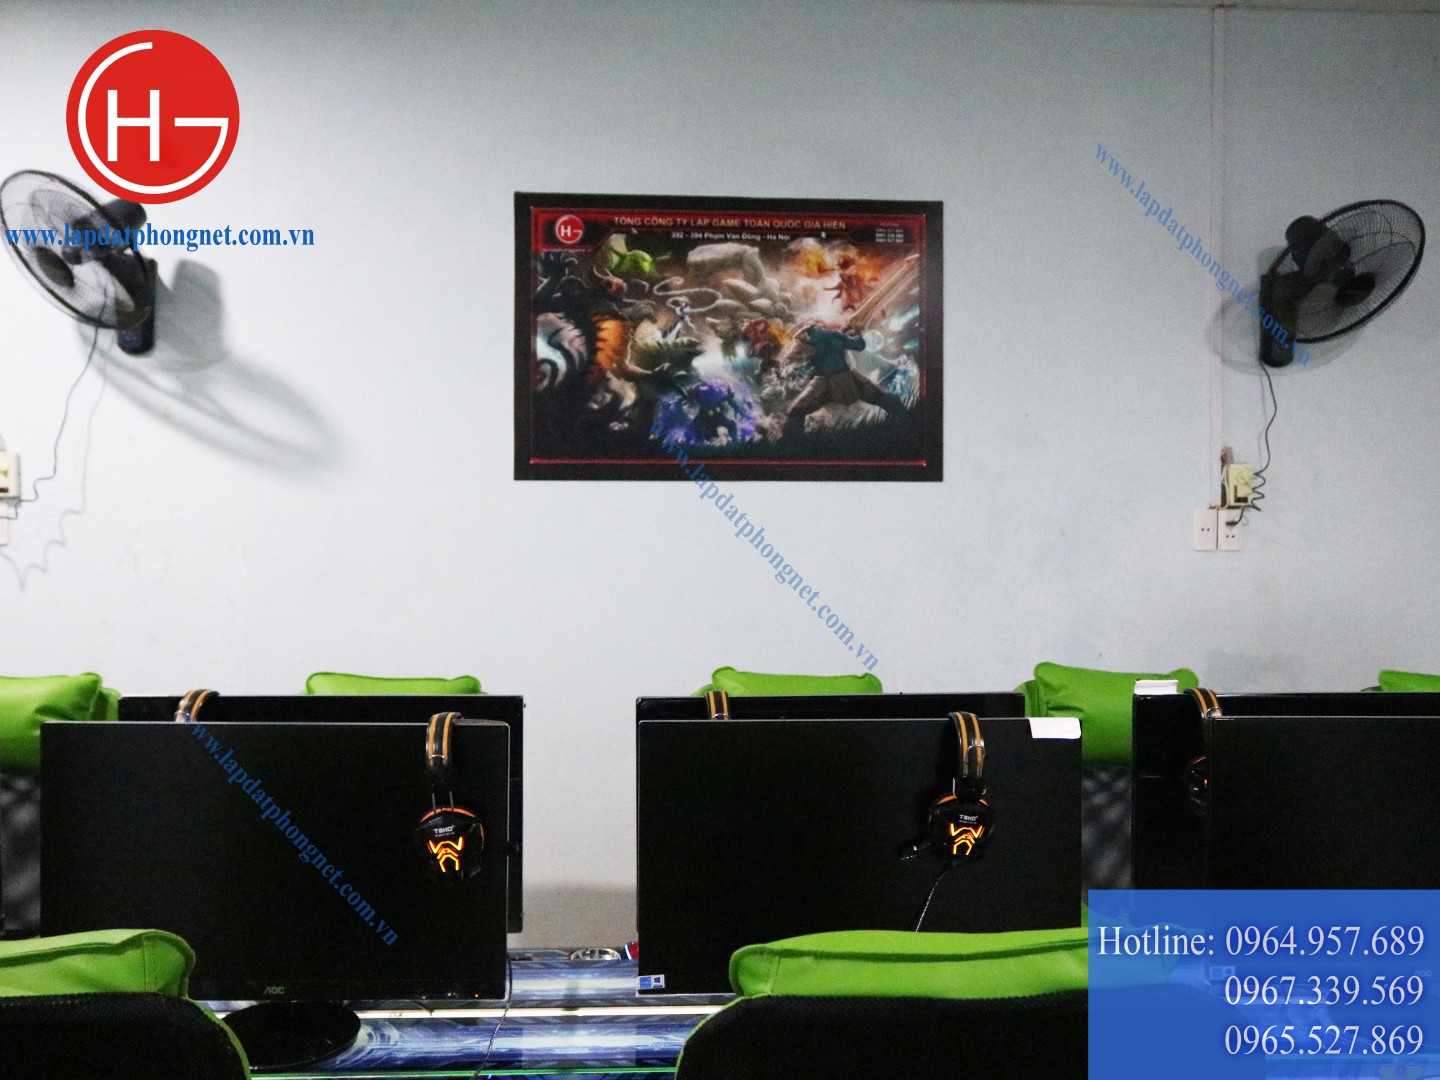 Lắp đặt phòng game net cho anh Nguyện tại Hiệp Hòa, Bắc Giang